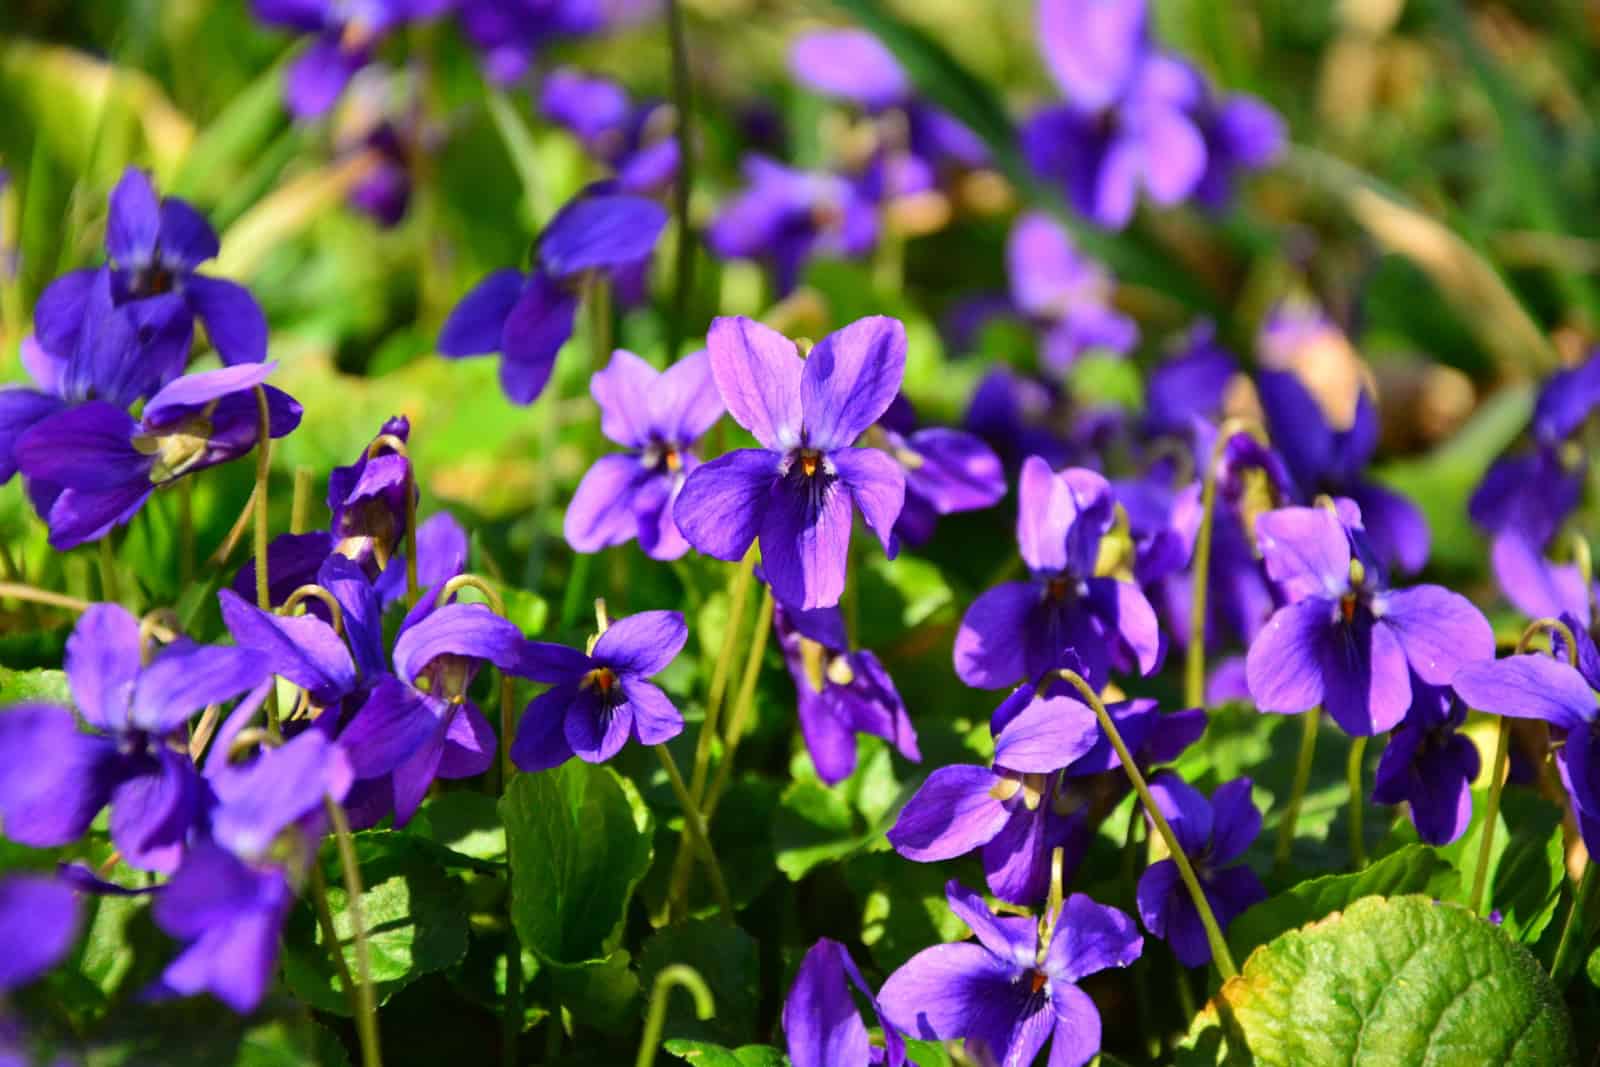 Common Violet, or Garden Violet